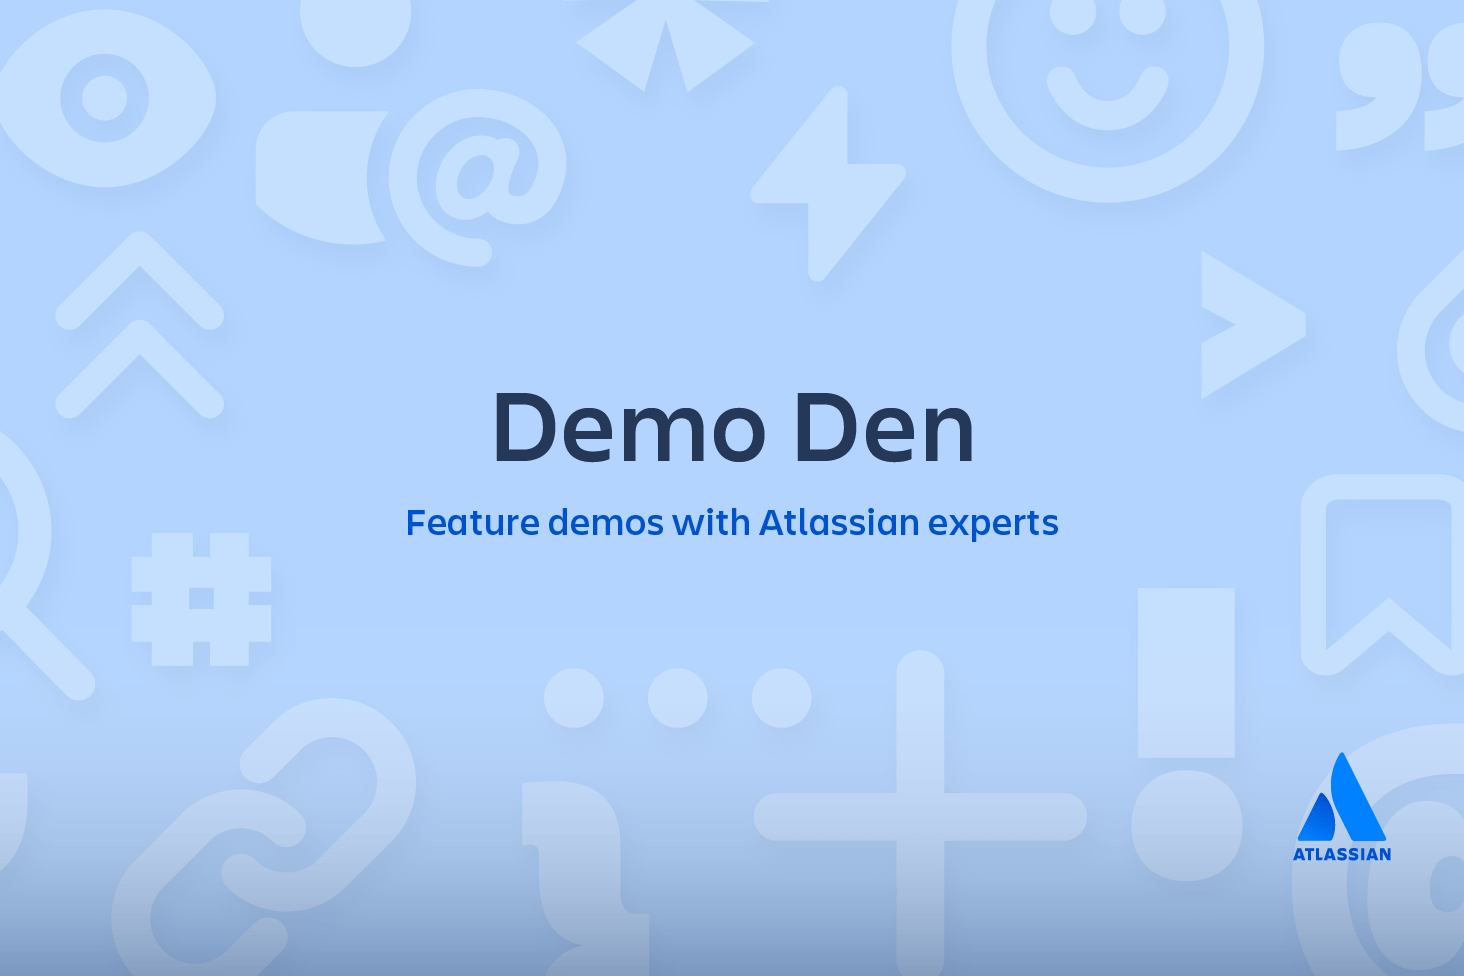 Demonstrações de funções no Demo Den com parceiros da Atlassian